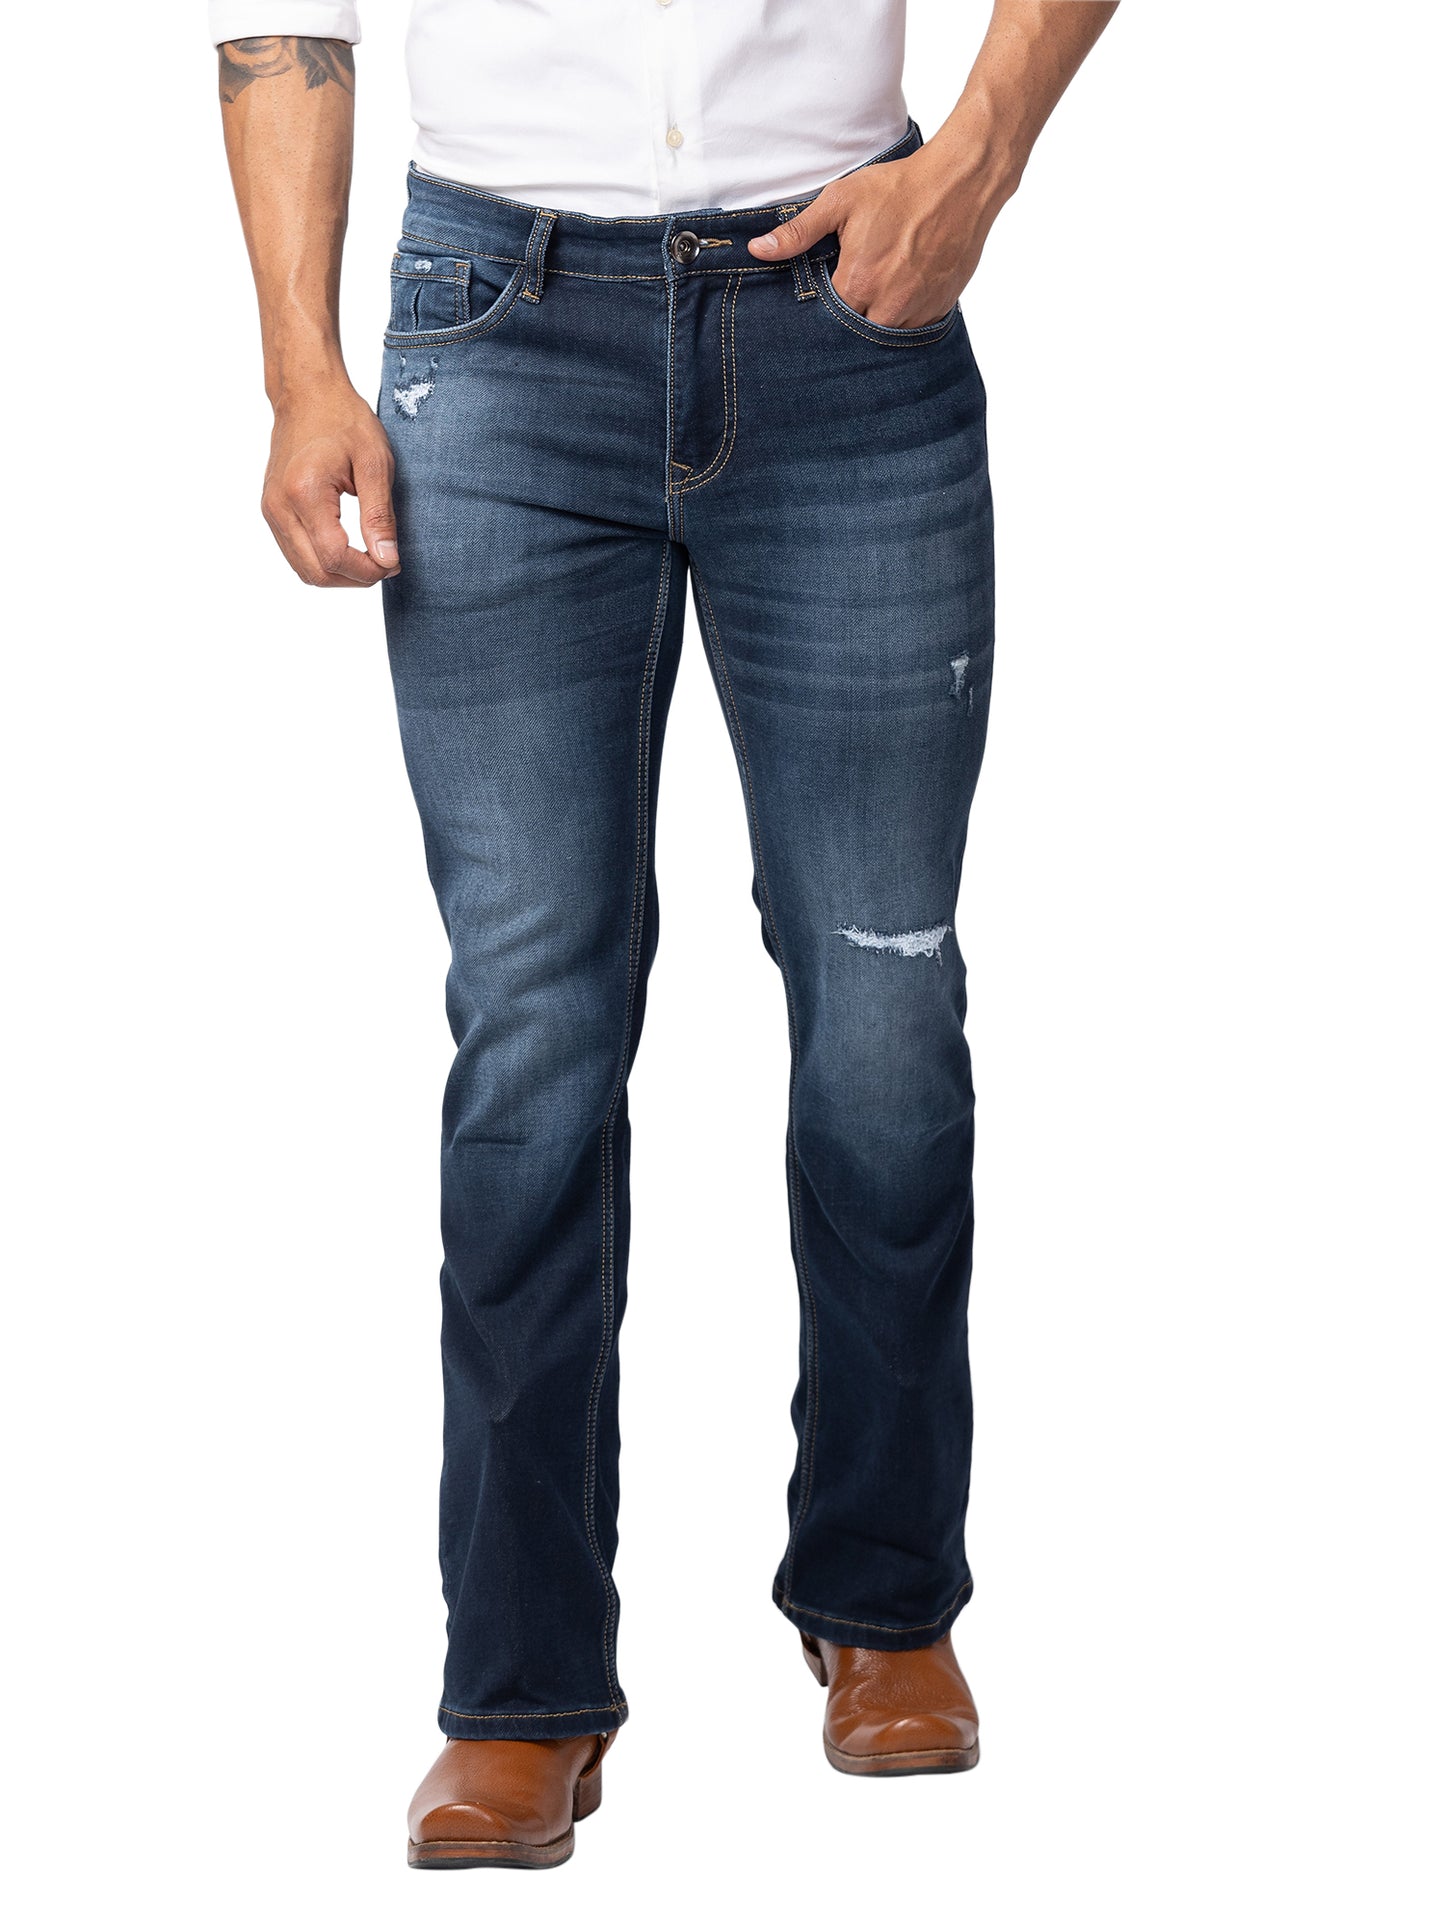 Indigo Grey Bootcut Jeans for Men